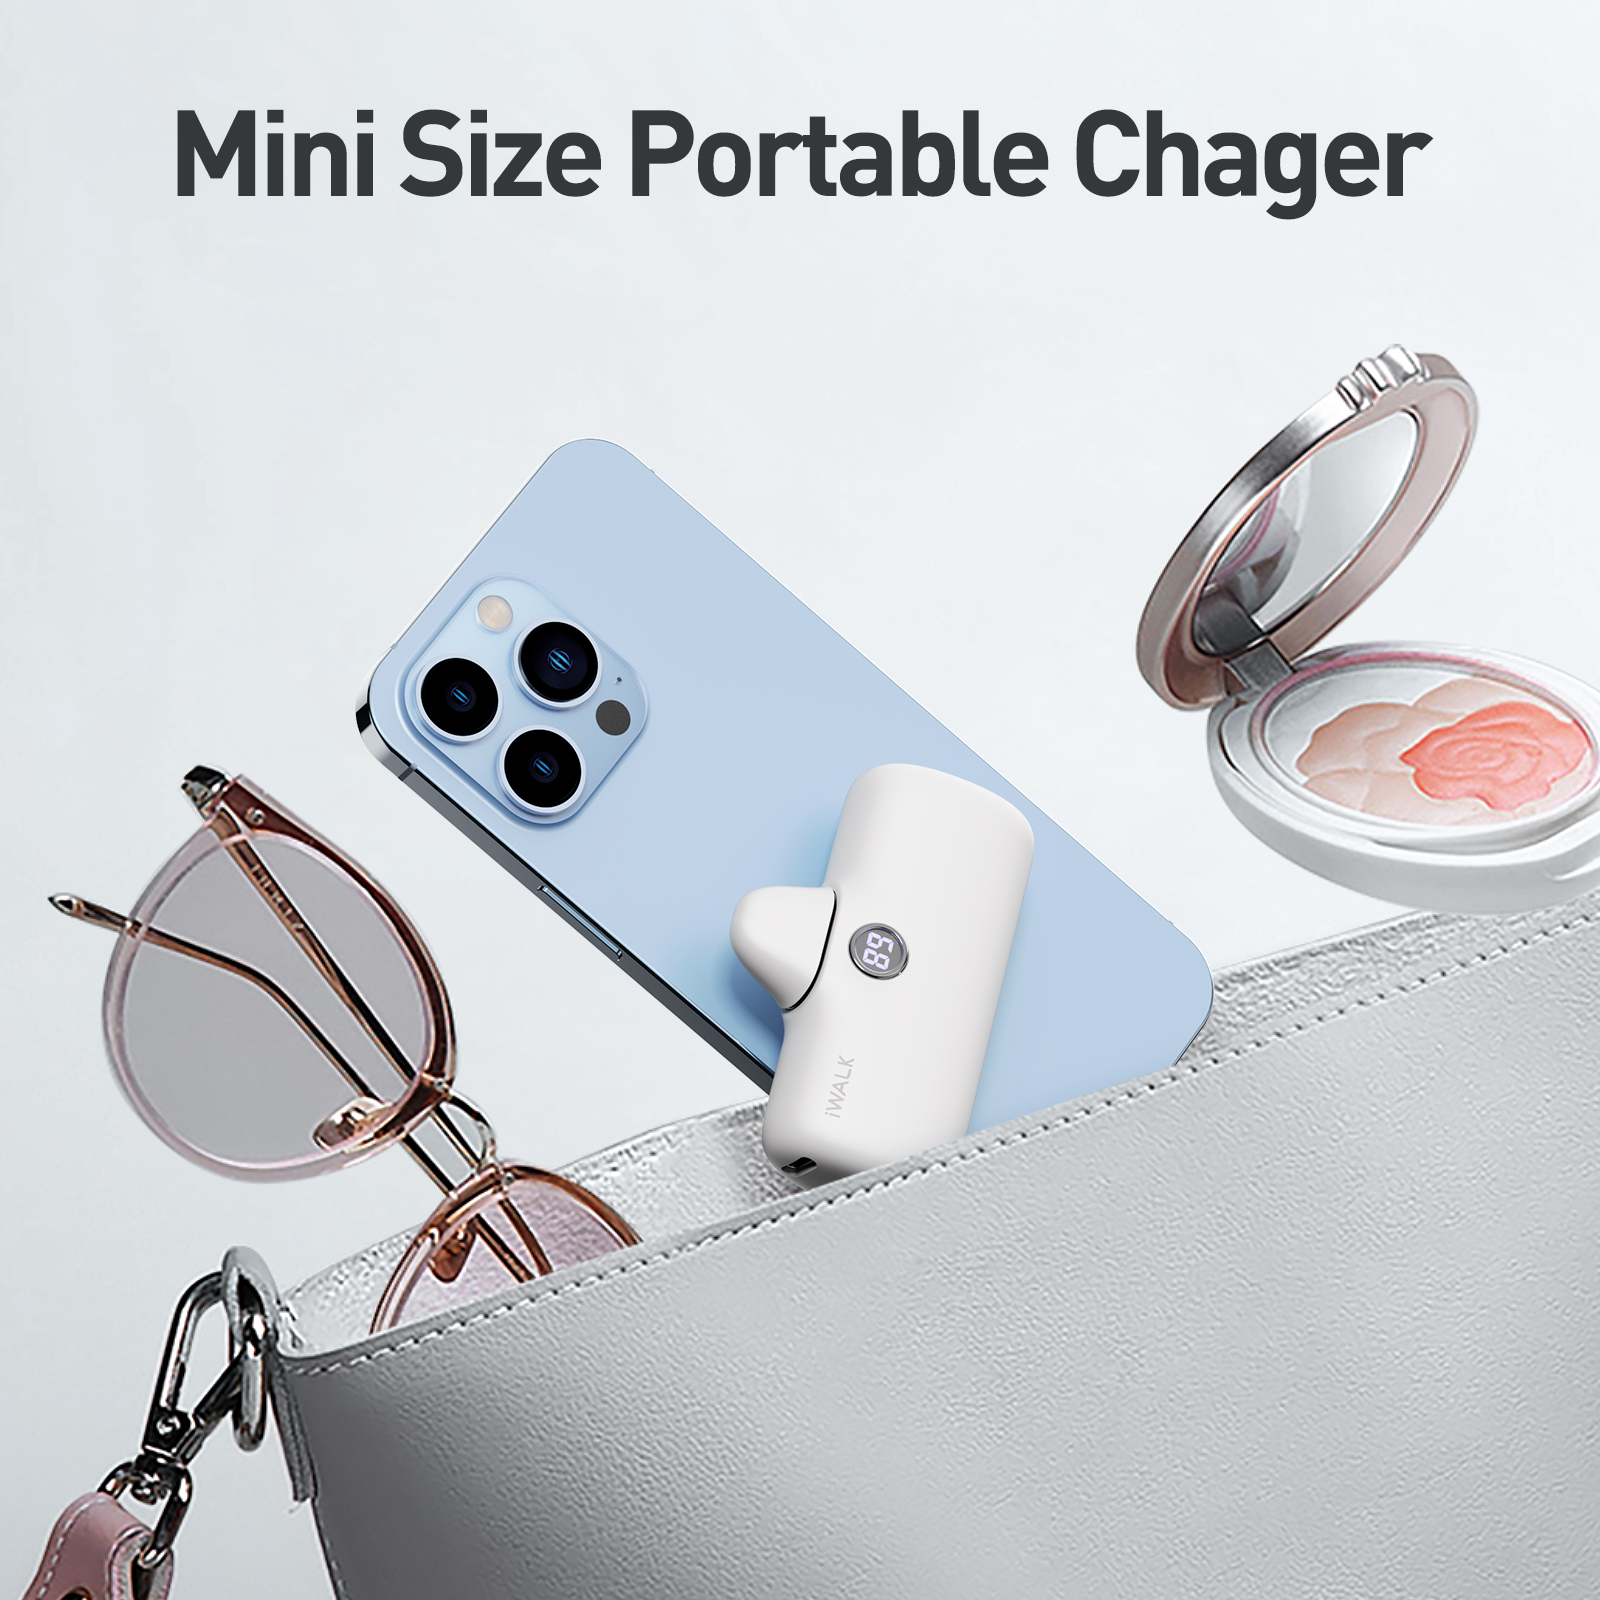 iWalk LinkPod Portable Charger 4800mAh Power Bank - Pink - مزود